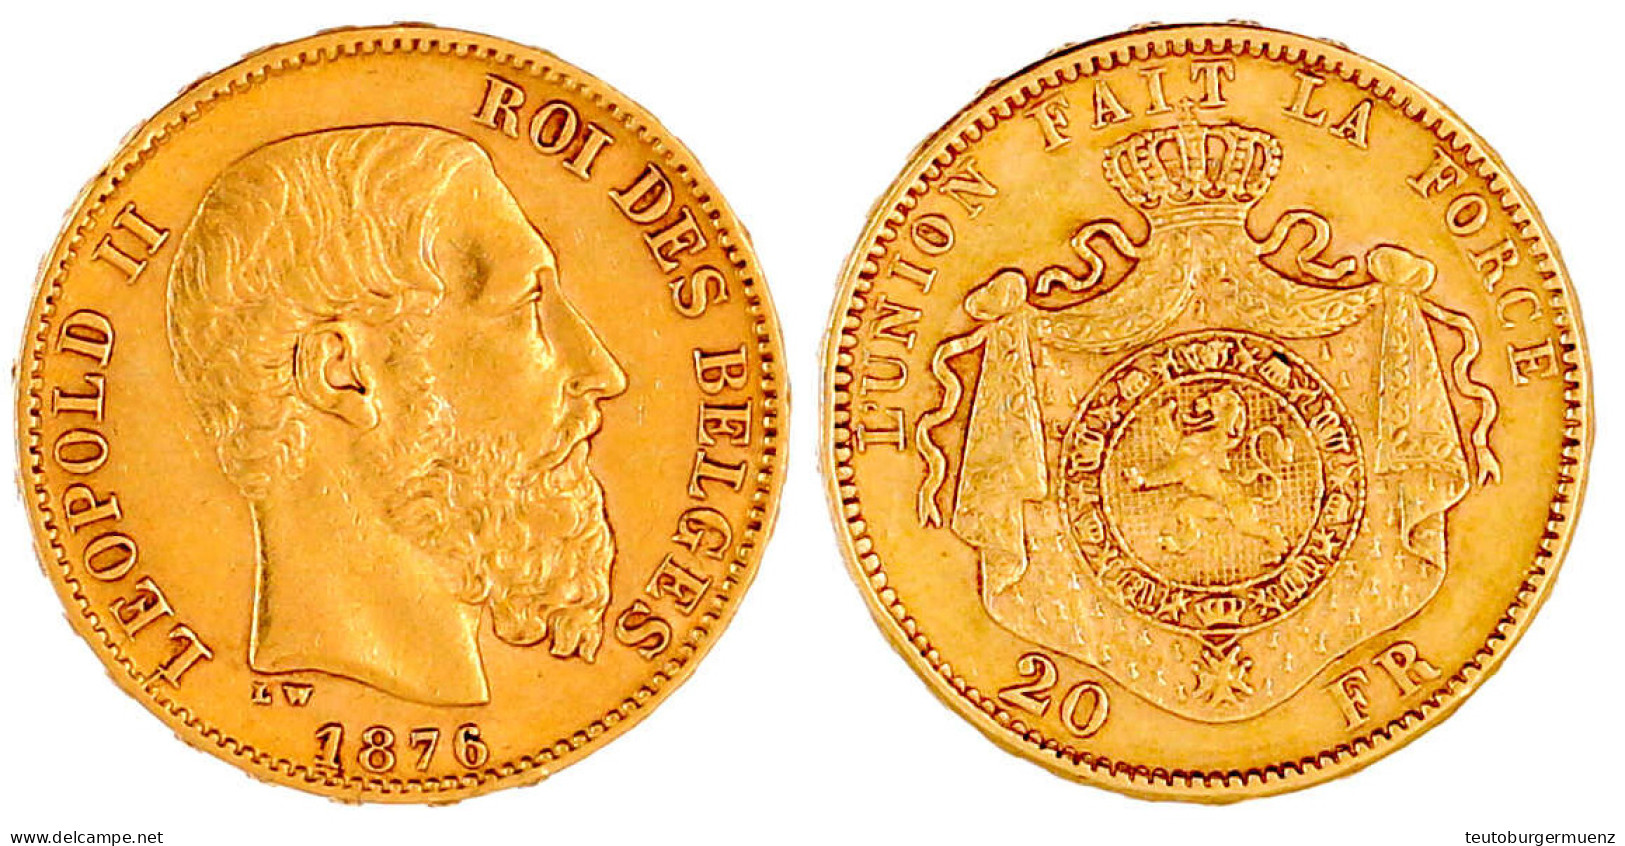 20 Francs 1876. Pos. A. 6,45 G. 900/1000. Vorzüglich. Krause/Mishler 37. - 20 Francs (or)